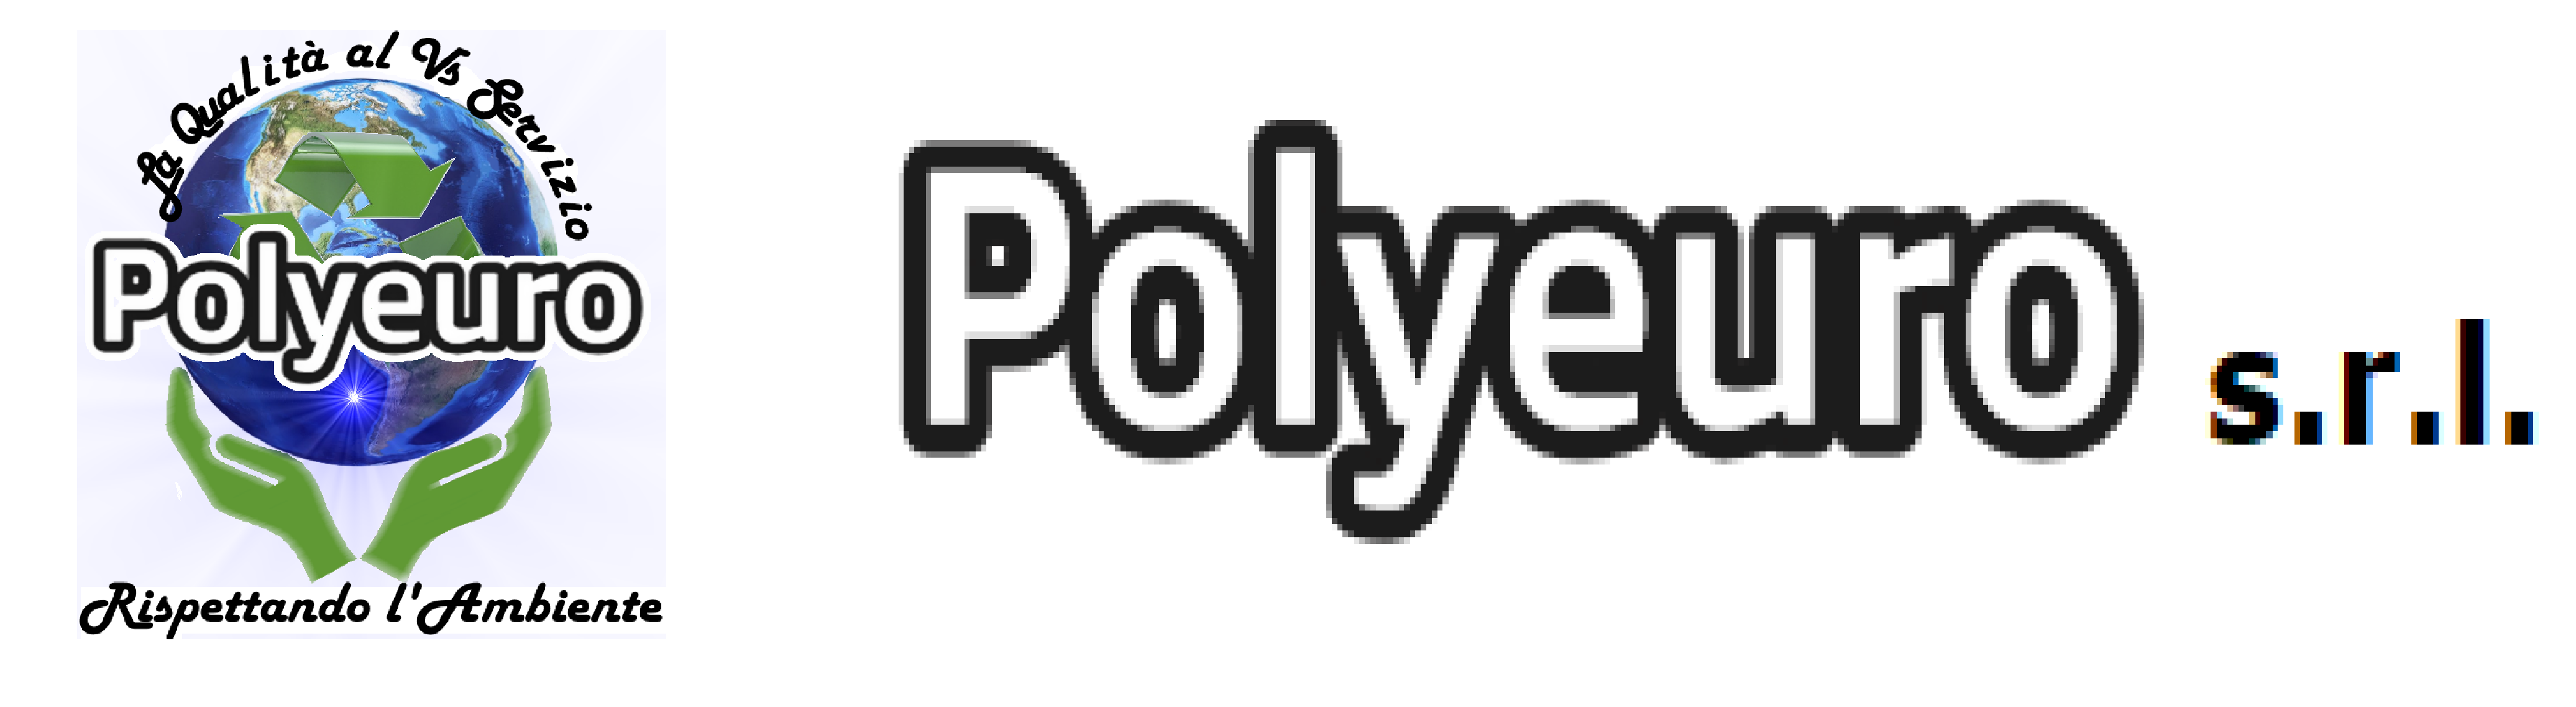 Polyeuro logo